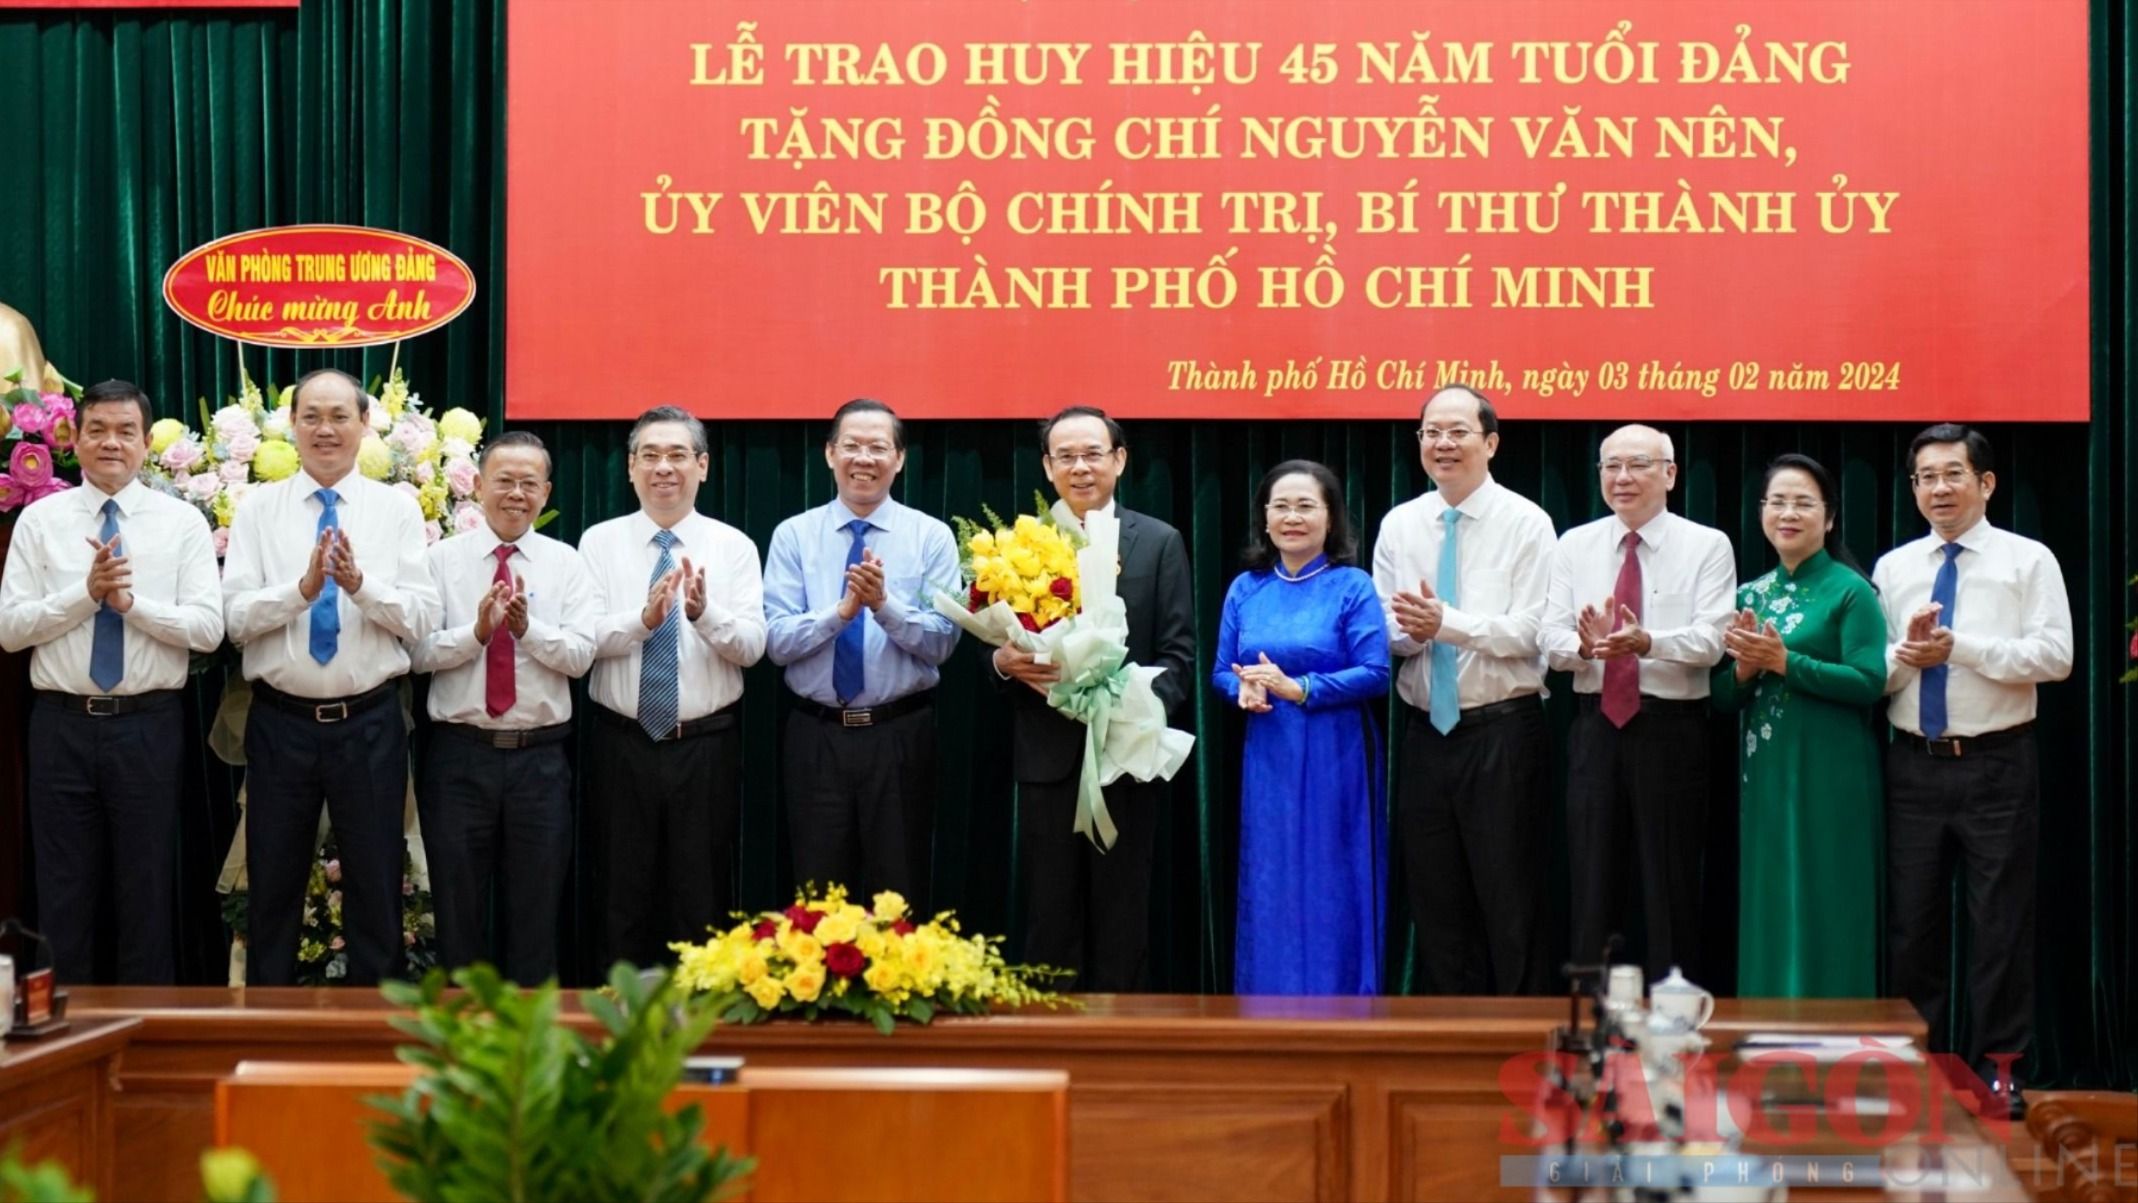 4-Thường trực Thành ủy, Ban Thường vụ Thành ủy TP. Hồ Chí Minh tặng hoa chúc mừng đồng chí Nguyễn Văn Nên (Ảnh: Hoàng Hùng).